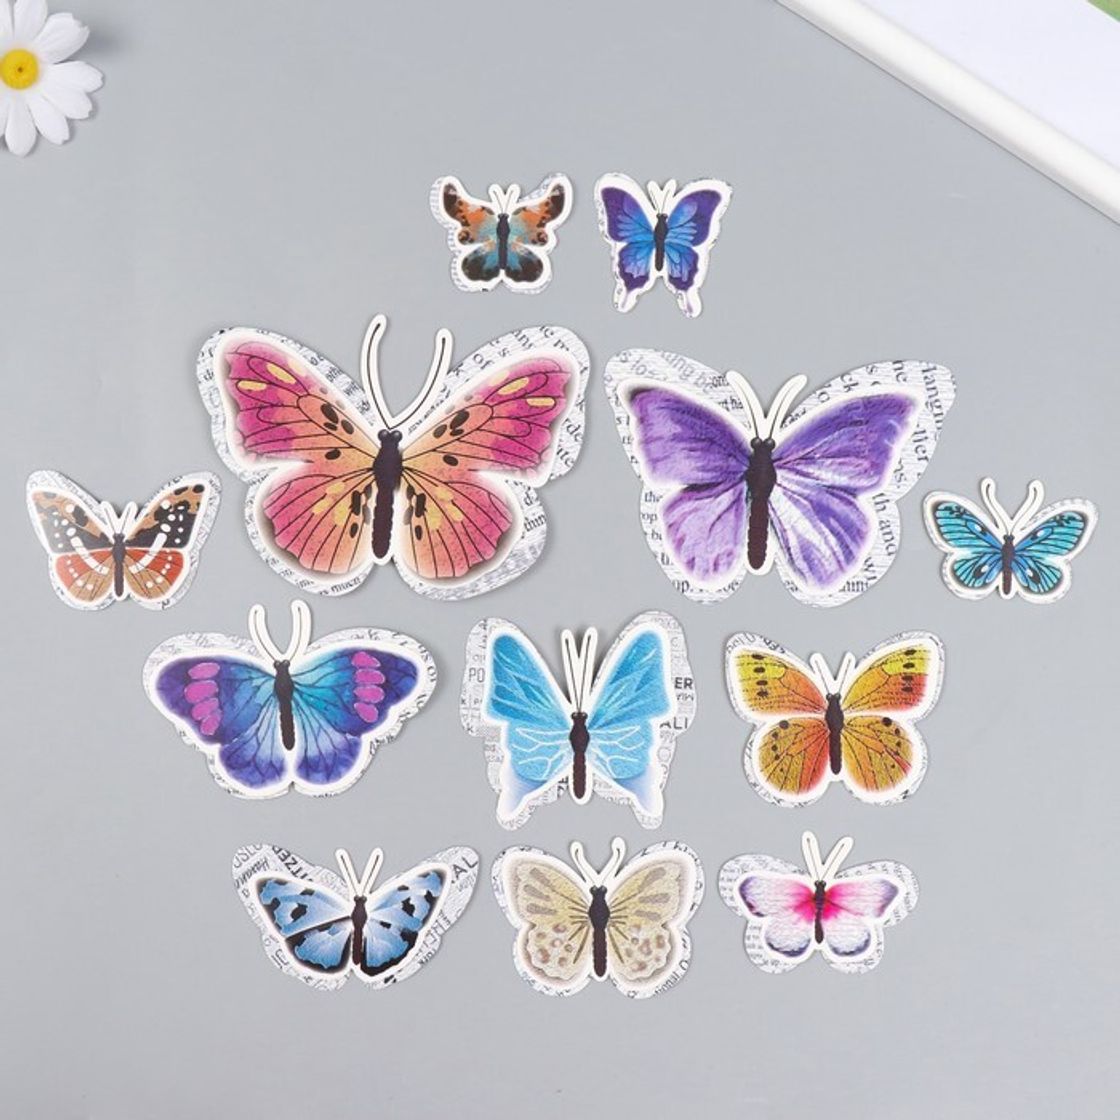 Купить бабочки с доставкой. Бабочка из картона. Бабочка на картоне. Бабочки з картона для занятий в старшей группе. Как украсить бабочку из картона.